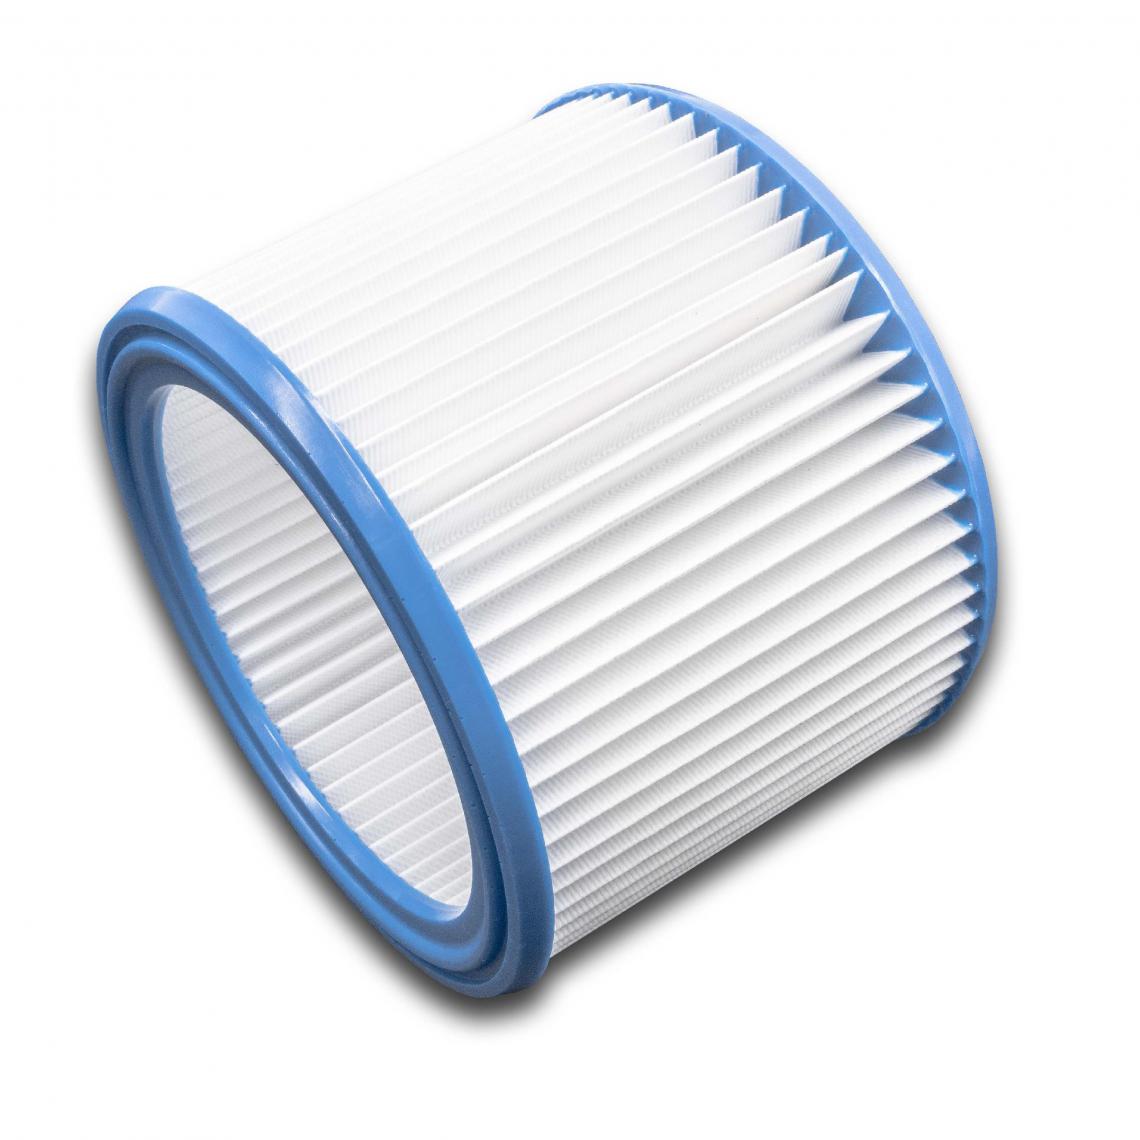 Vhbw - vhbw filtre rond à plis pour aspirateur multifonction, compatible avec WAP EC-380 E, EURO 45522, ST 10, ST 15, ST 20, ST 25, ST 35 E - Cordons d'alimentation